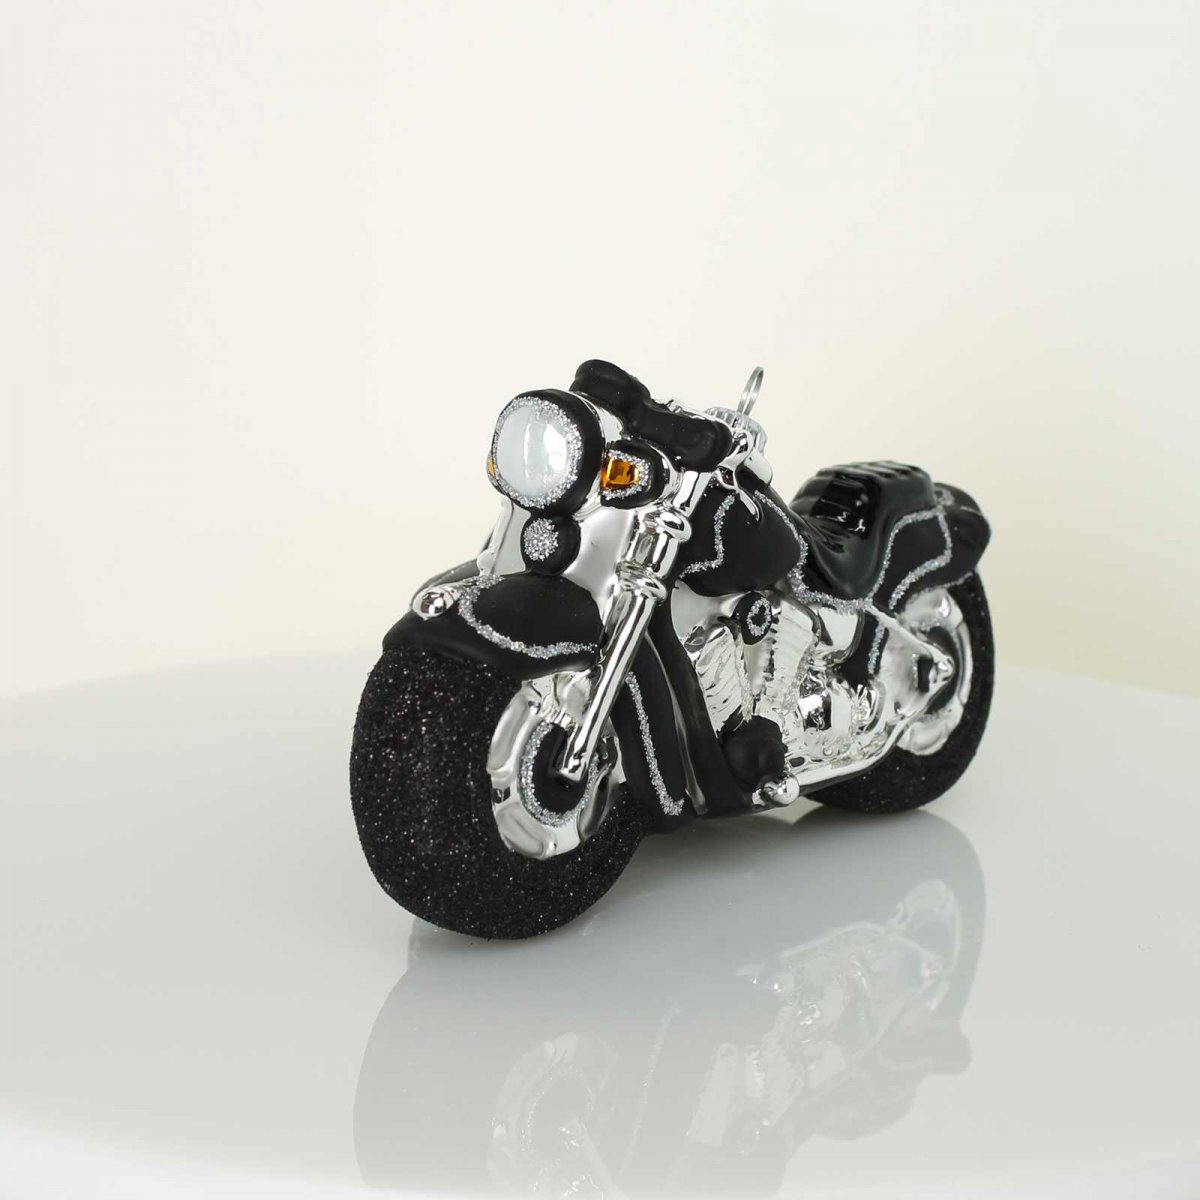 Мотоцикл Bruder Scrambler Ducati Cafe Racer с мотоциклистом (63-050) 1:16 19 см